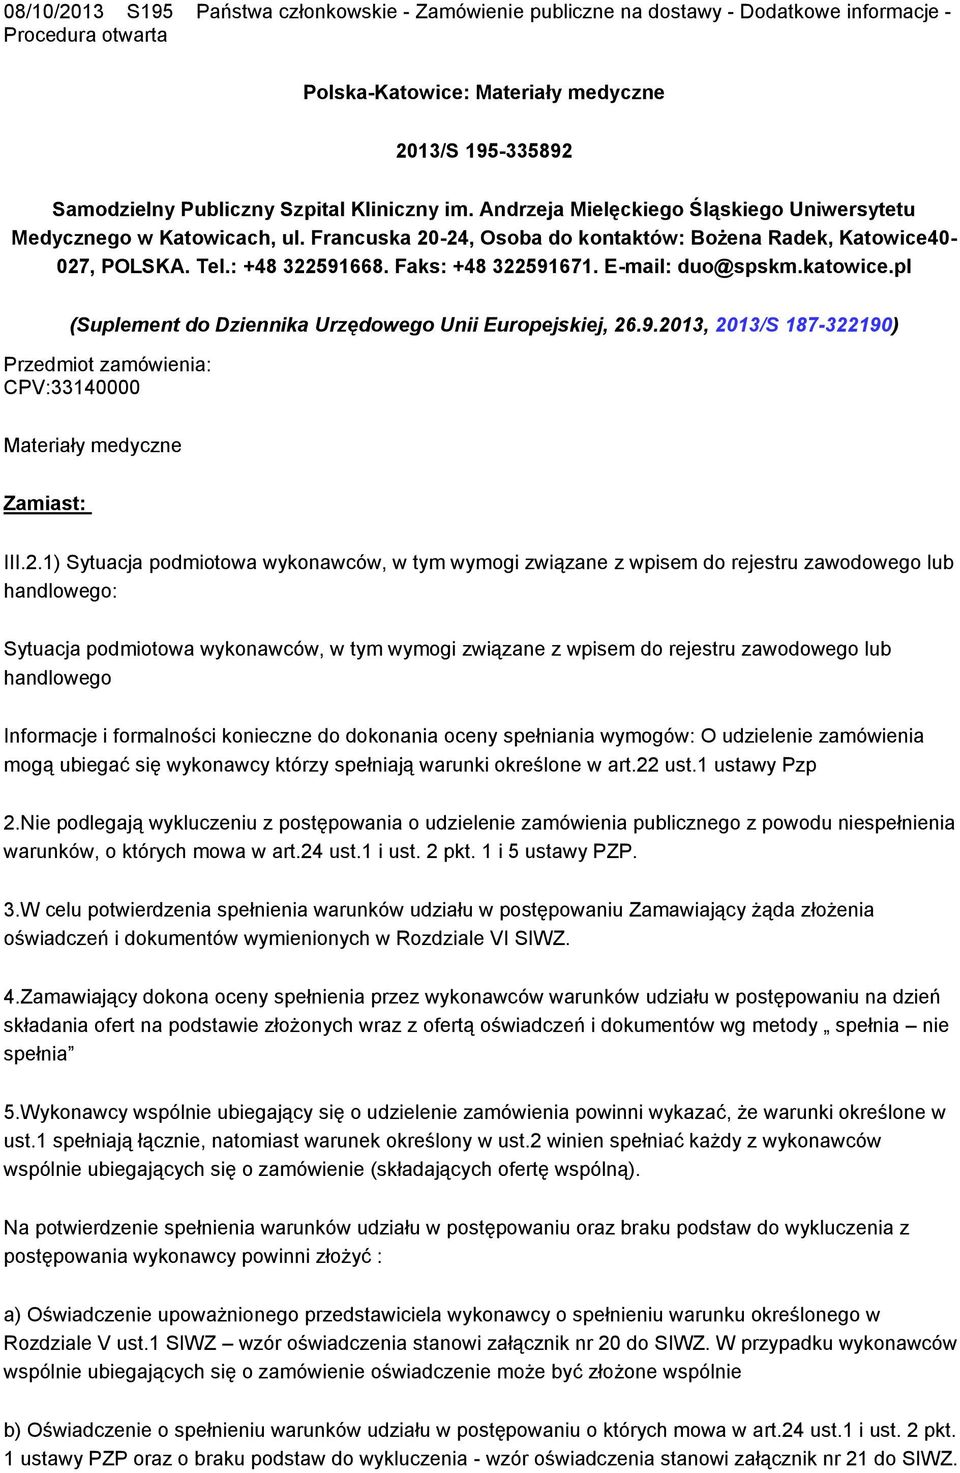 Faks: +48 322591671. E-mail: duo@spskm.katowice.pl (Suplement do Dziennika Urzędowego Unii Europejskiej, 26.9.2013, 2013/S 187-322190) Przedmiot zamówienia: CPV:33140000 Materiały medyczne Zamiast: III.